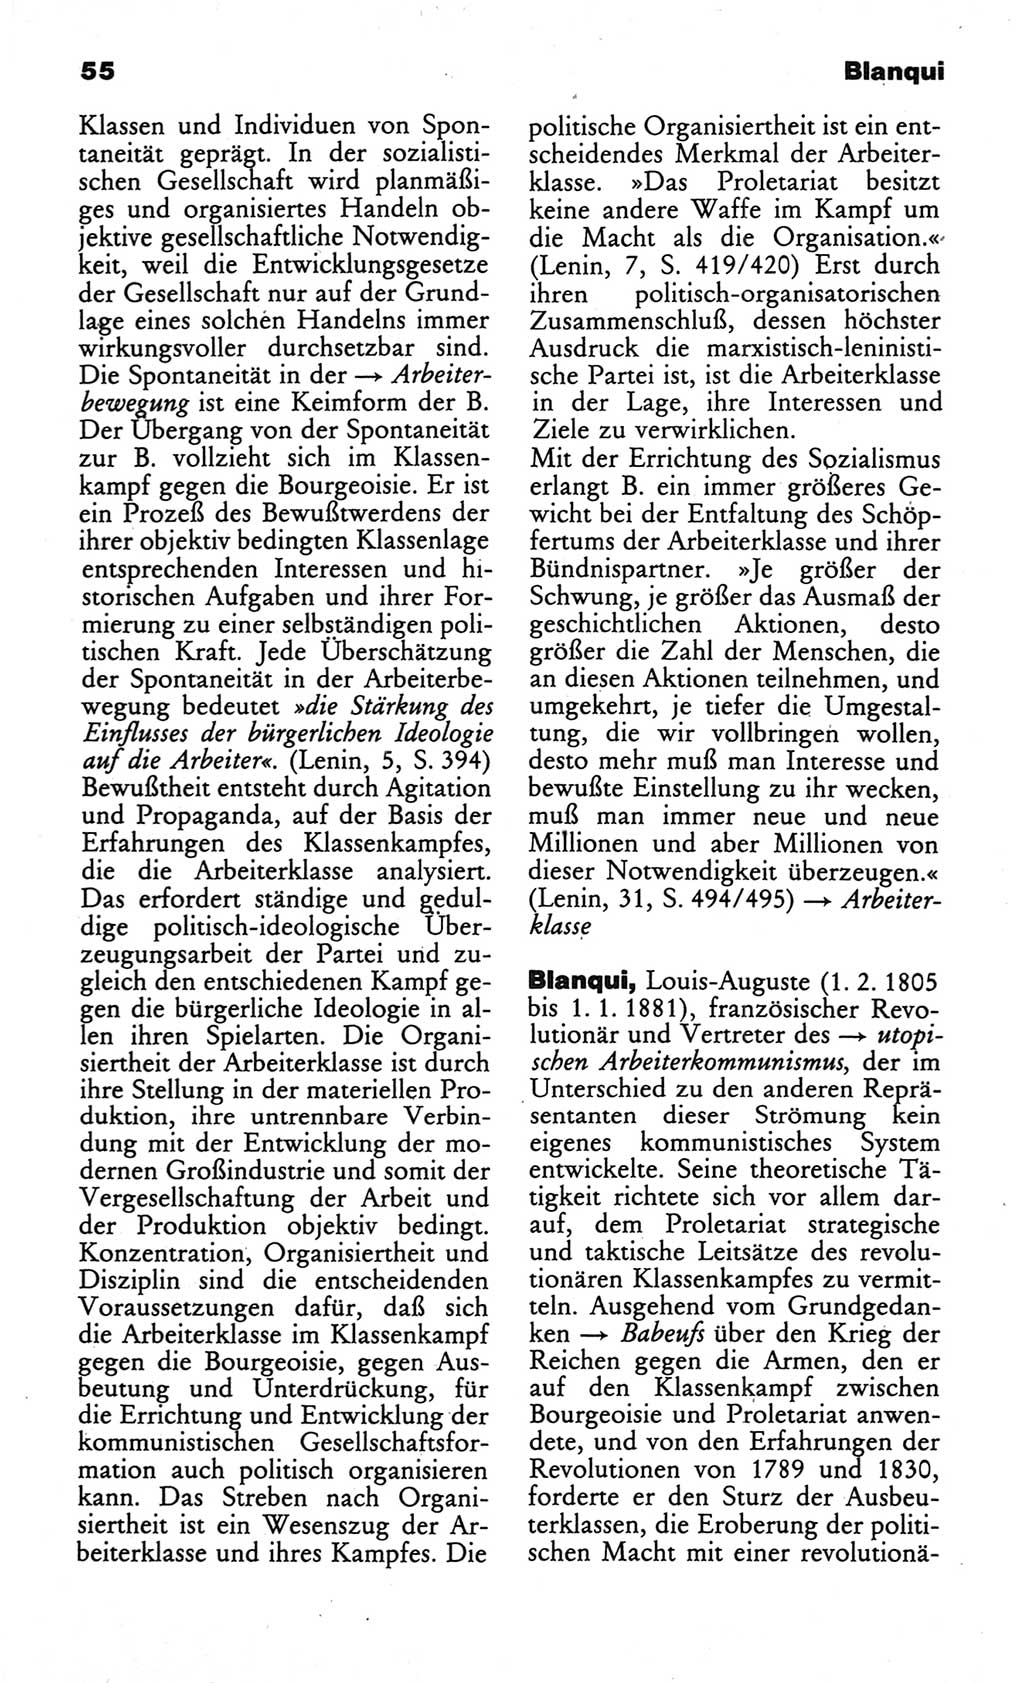 Wörterbuch des wissenschaftlichen Kommunismus [Deutsche Demokratische Republik (DDR)] 1984, Seite 55 (Wb. wiss. Komm. DDR 1984, S. 55)